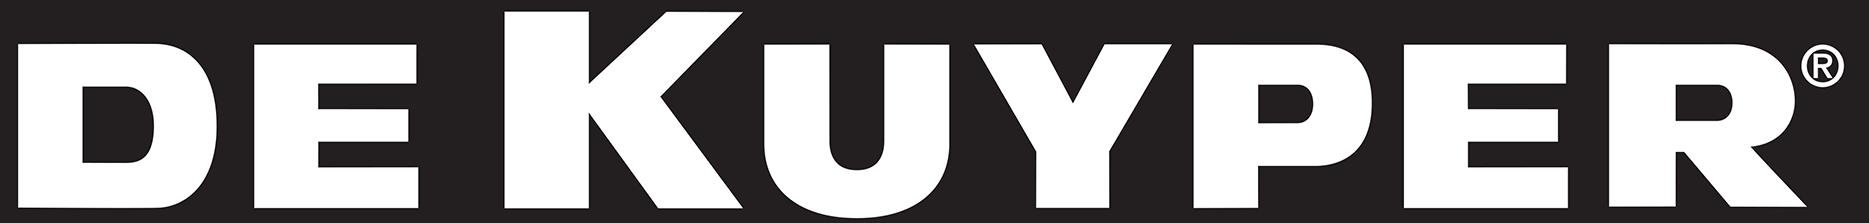 DeKuyper logo.png